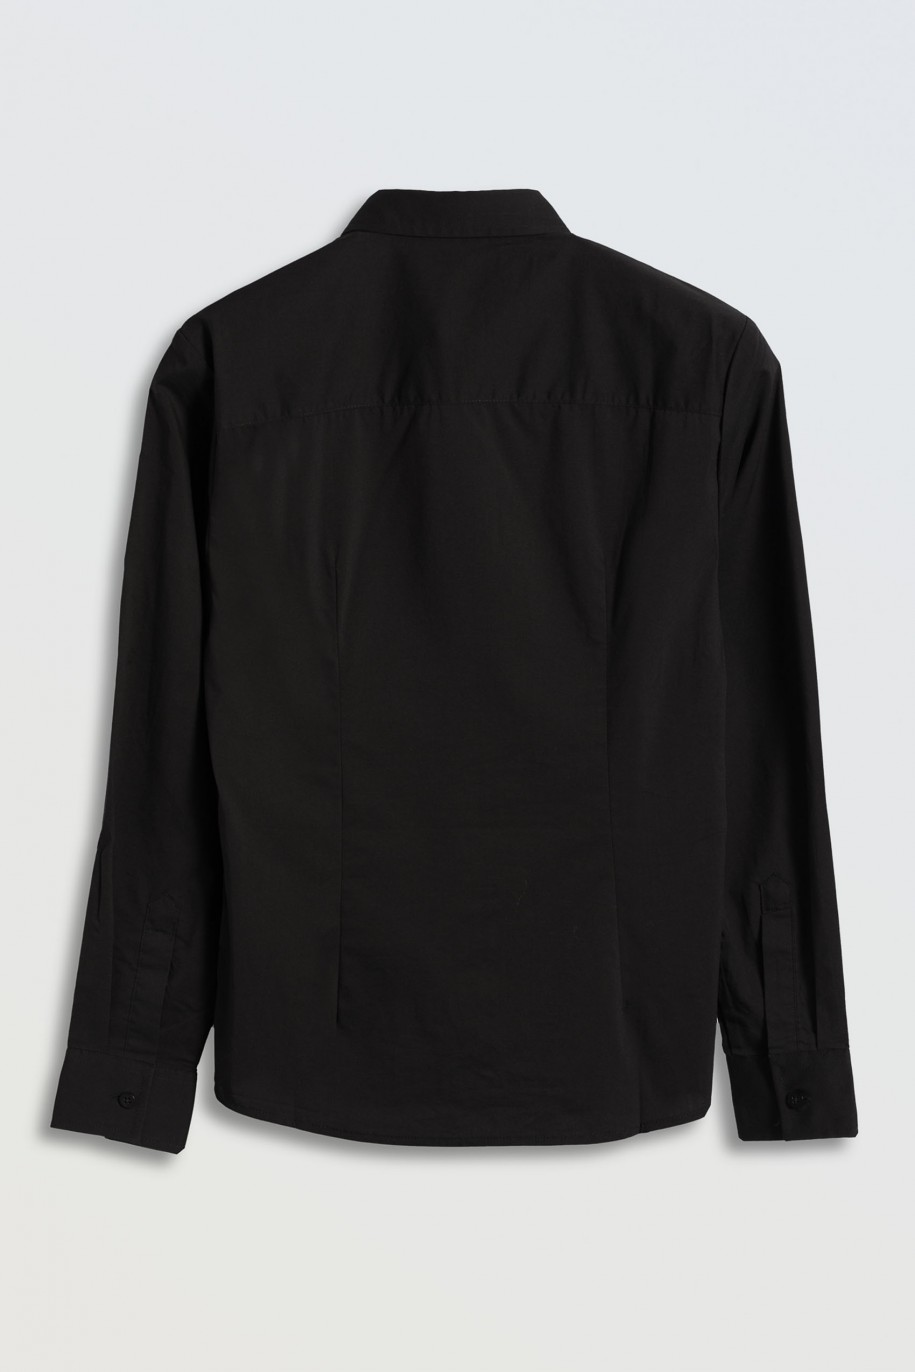 Czarna koszula z długim rękawem zapinana na guziki - 45854